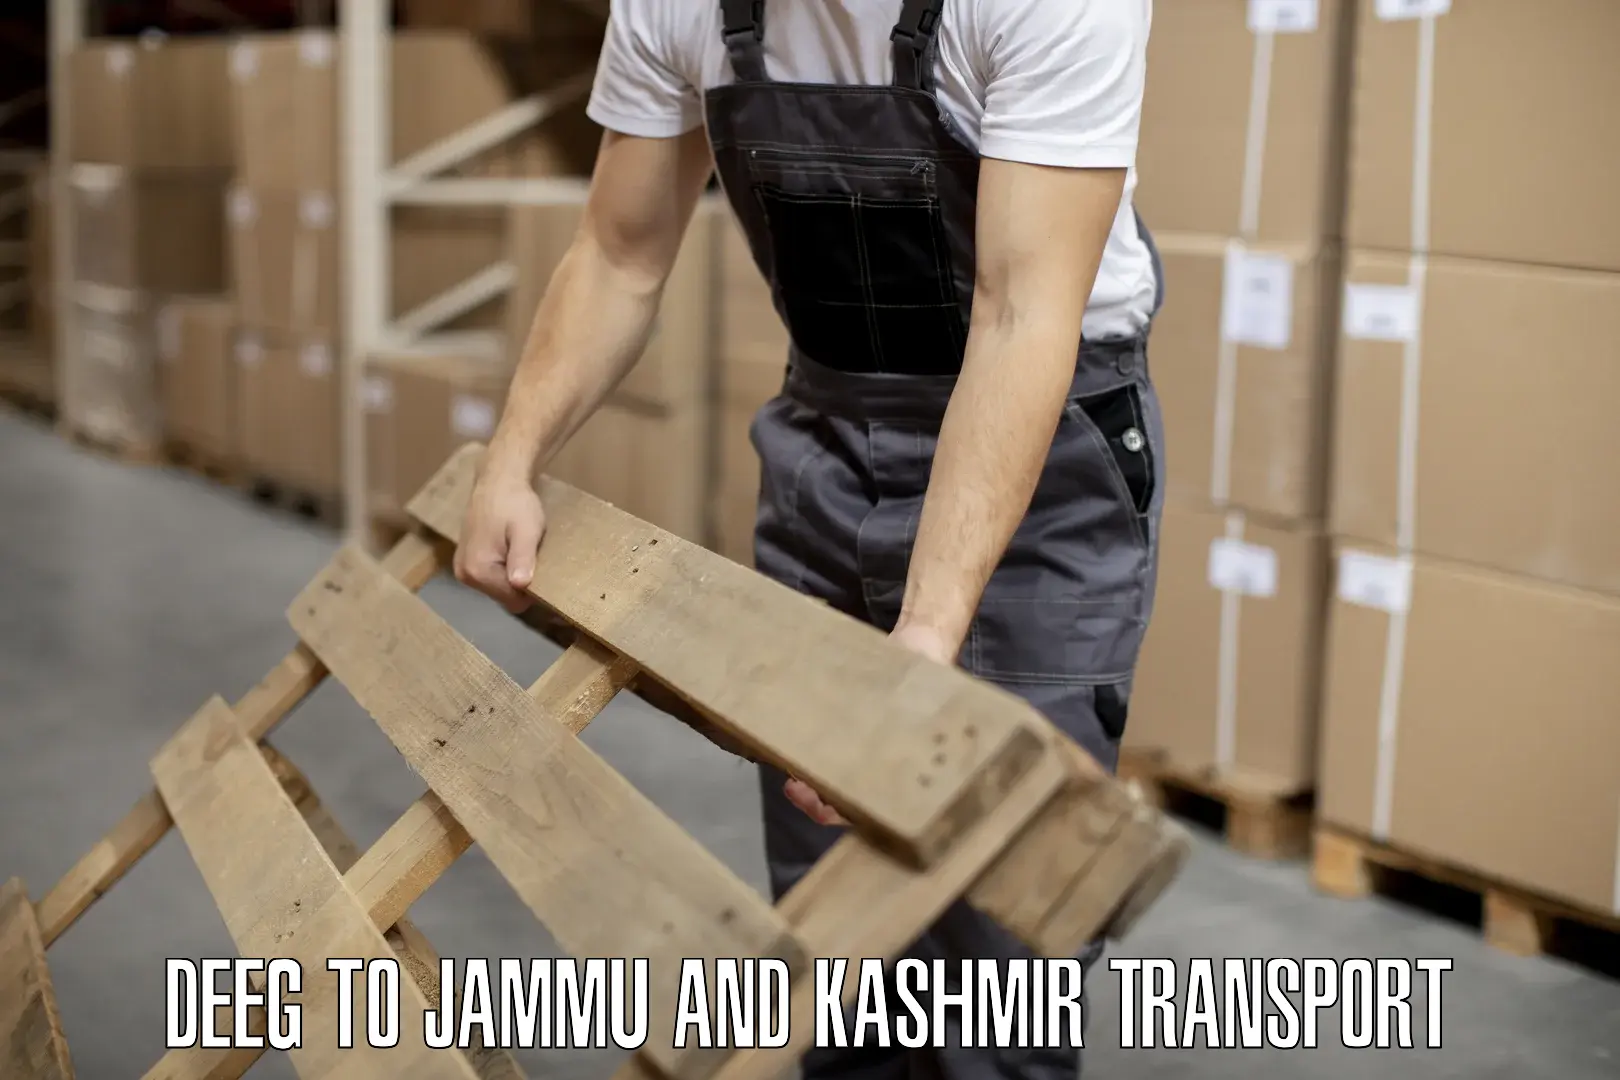 Daily transport service Deeg to Jammu and Kashmir